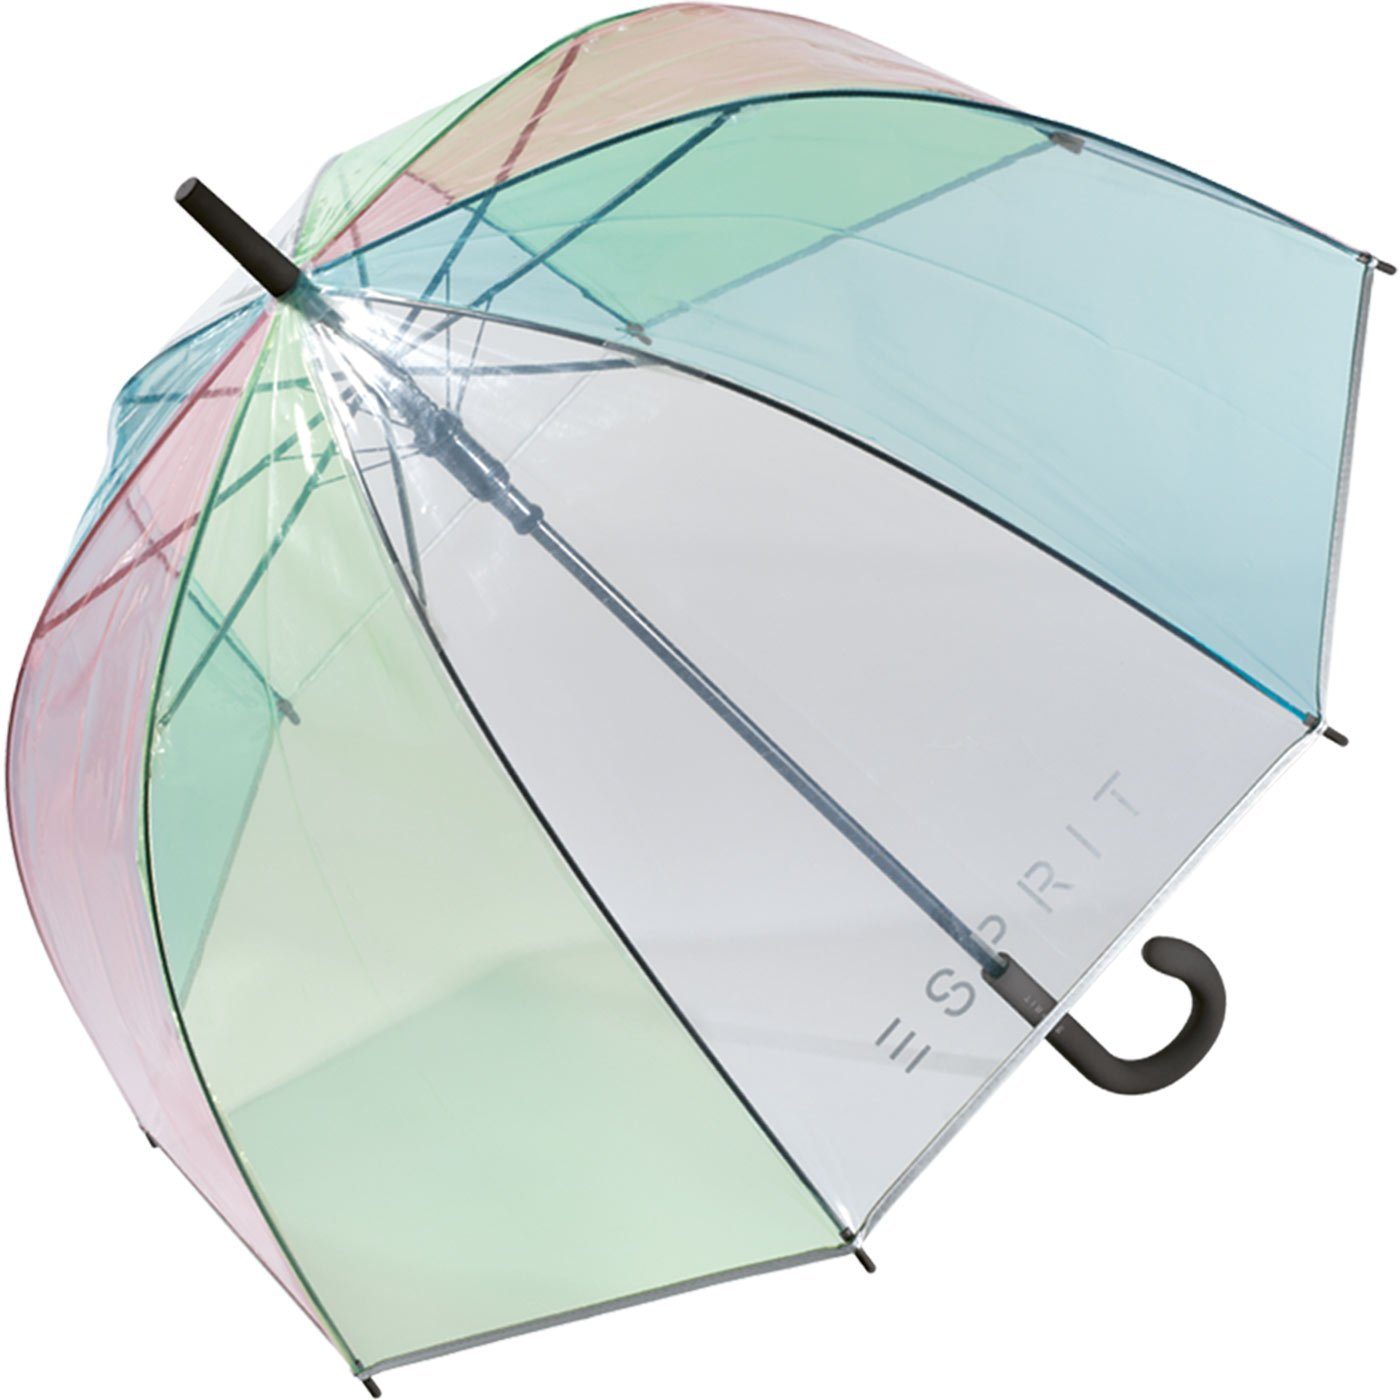 transparent, Esprit Automatik Glockenschirm Langregenschirm mit durchsichtig